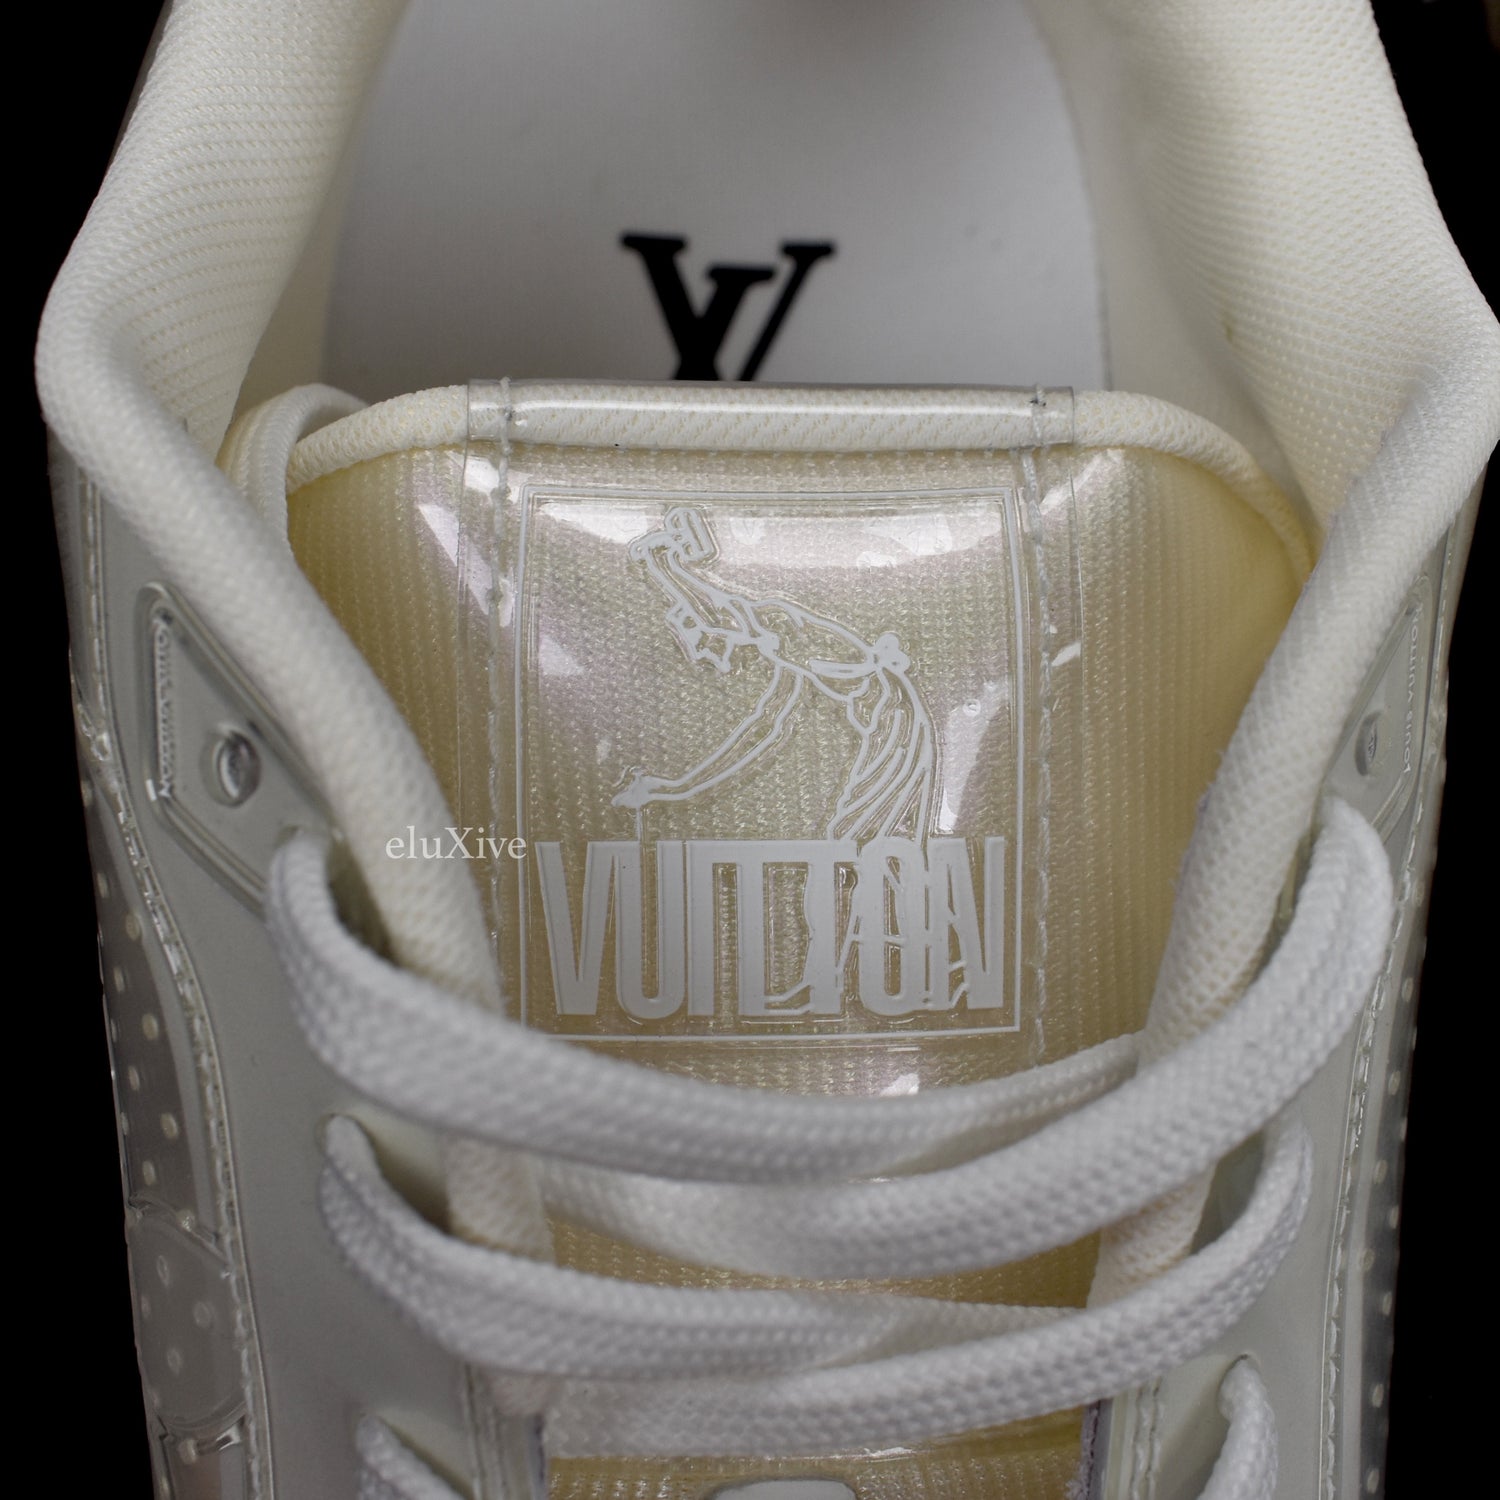 SALEOFF Louis Vuitton Trainer Beige White Sneaker - USALast